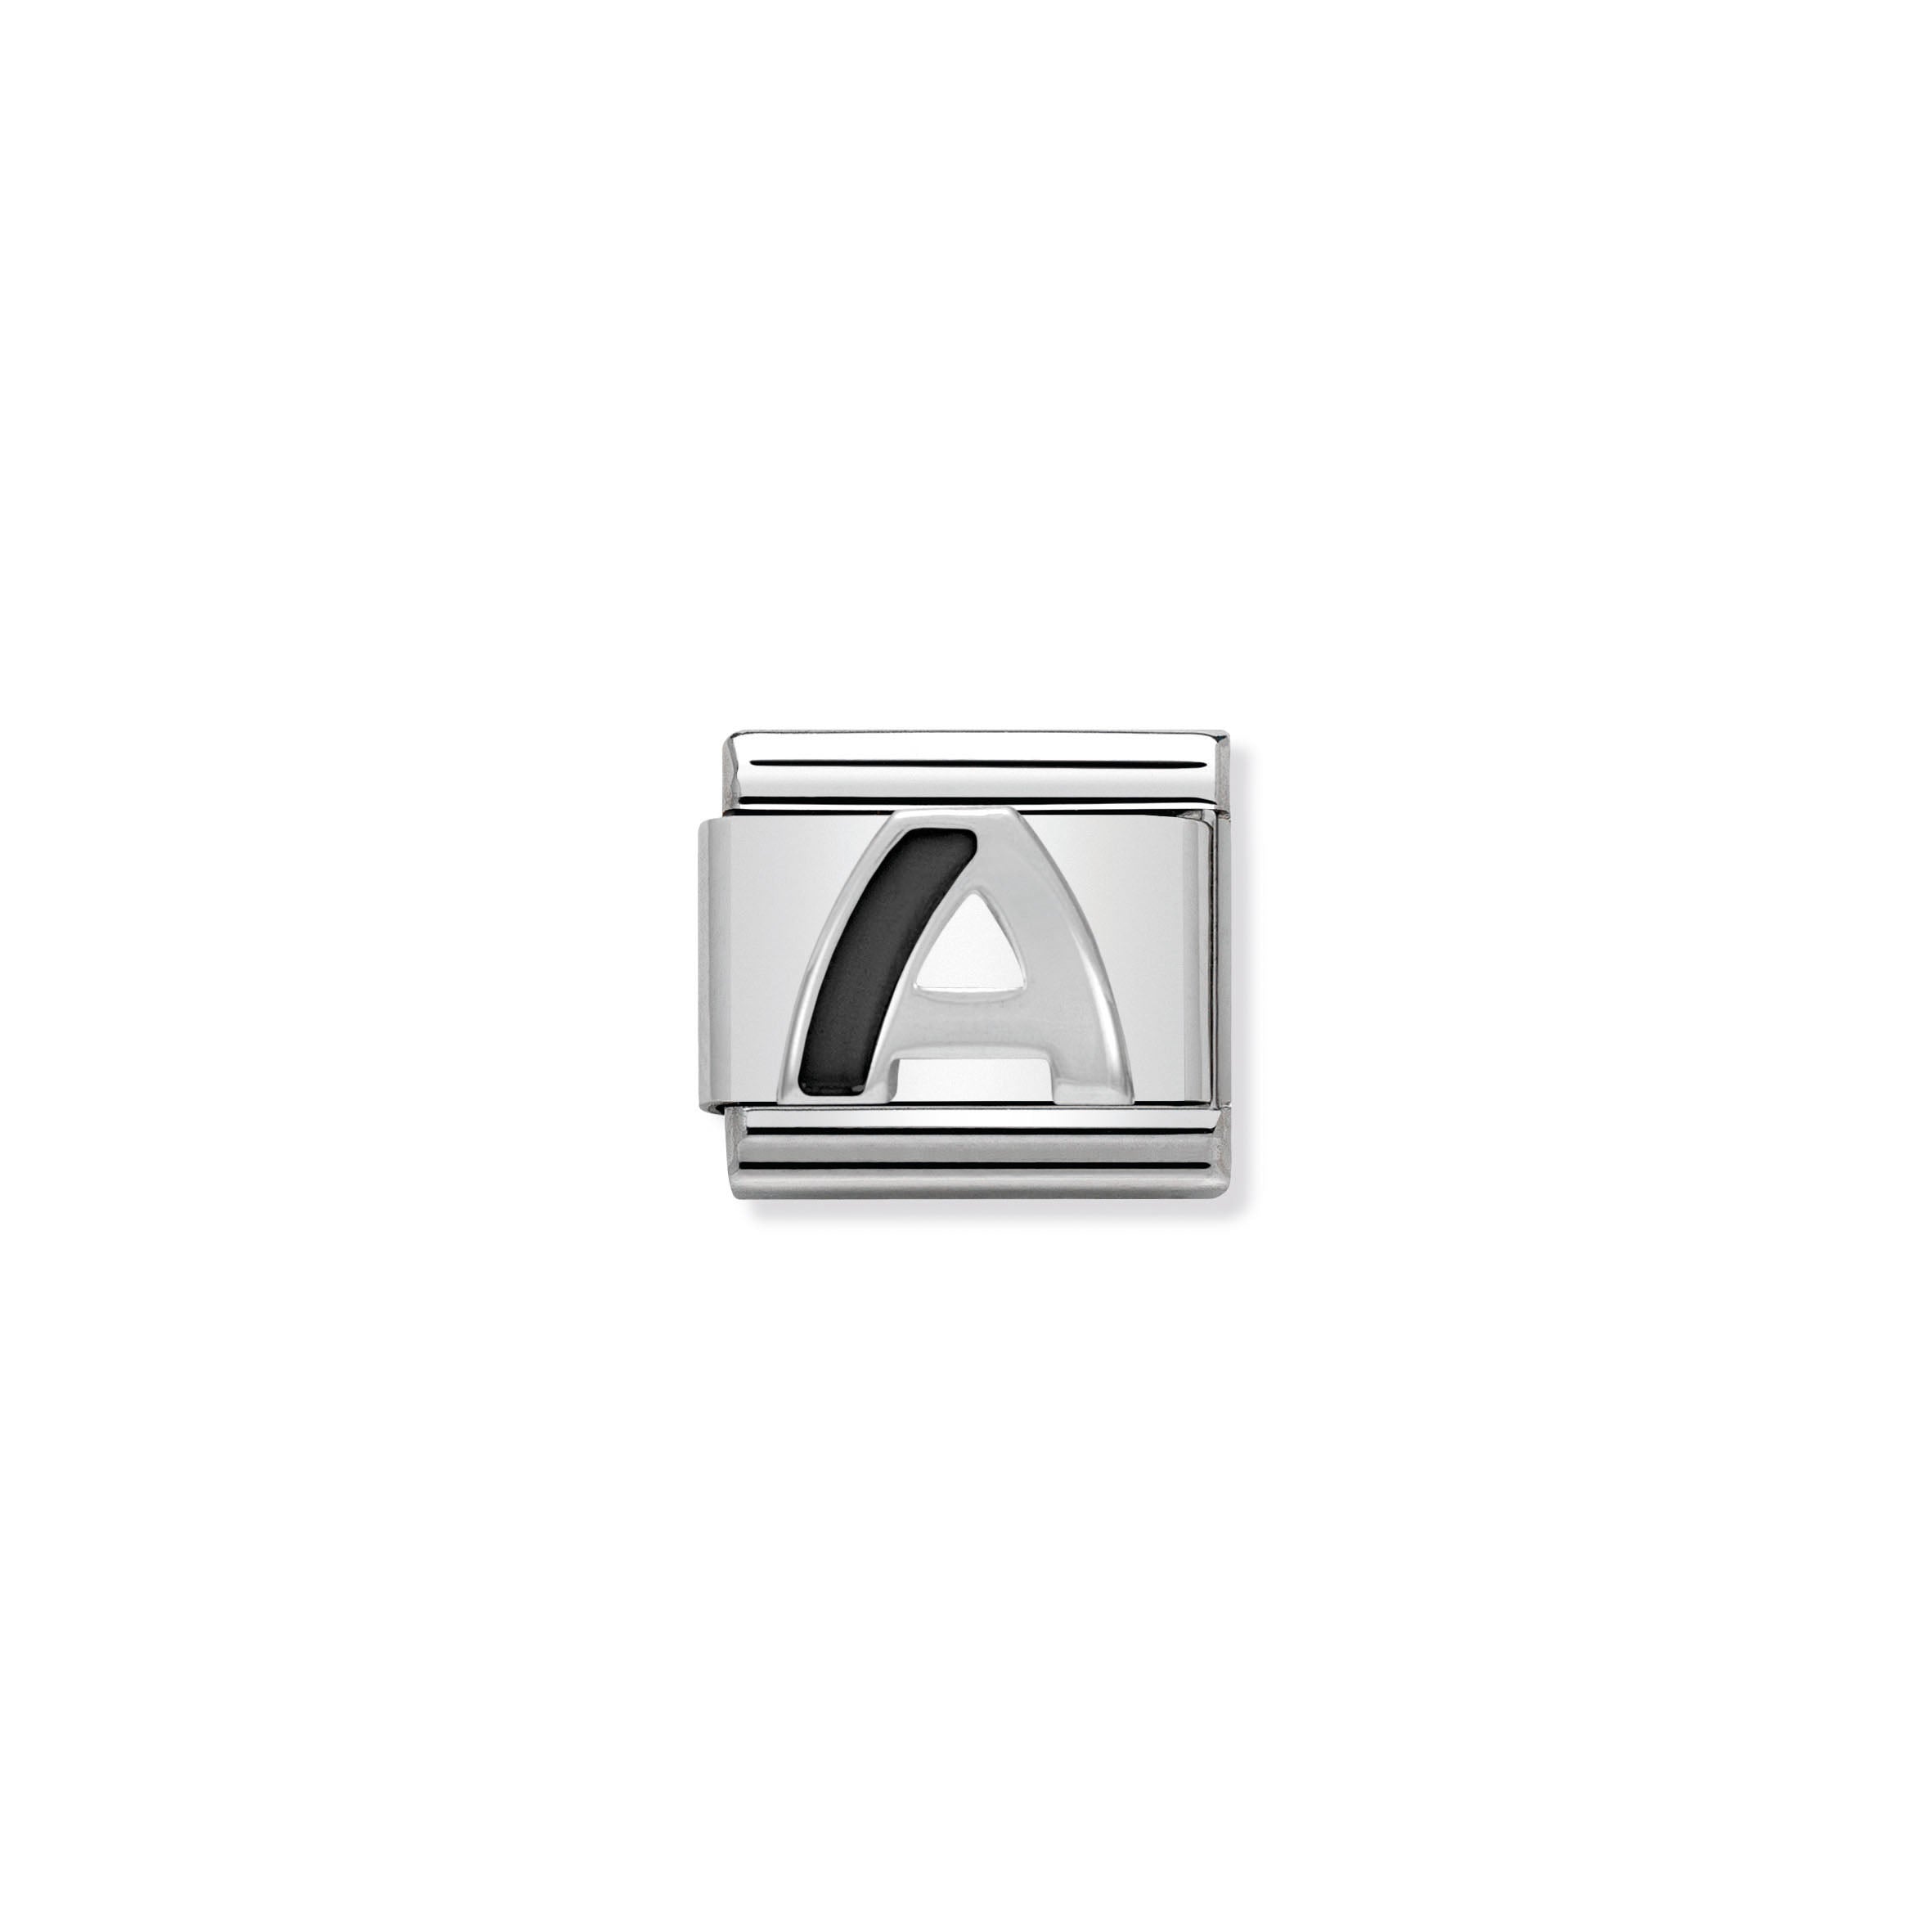 NOMINATION - Composable 330201 01 Classic BLACK ALPHABET st/steel, enamel & silver 925 (Letter A)